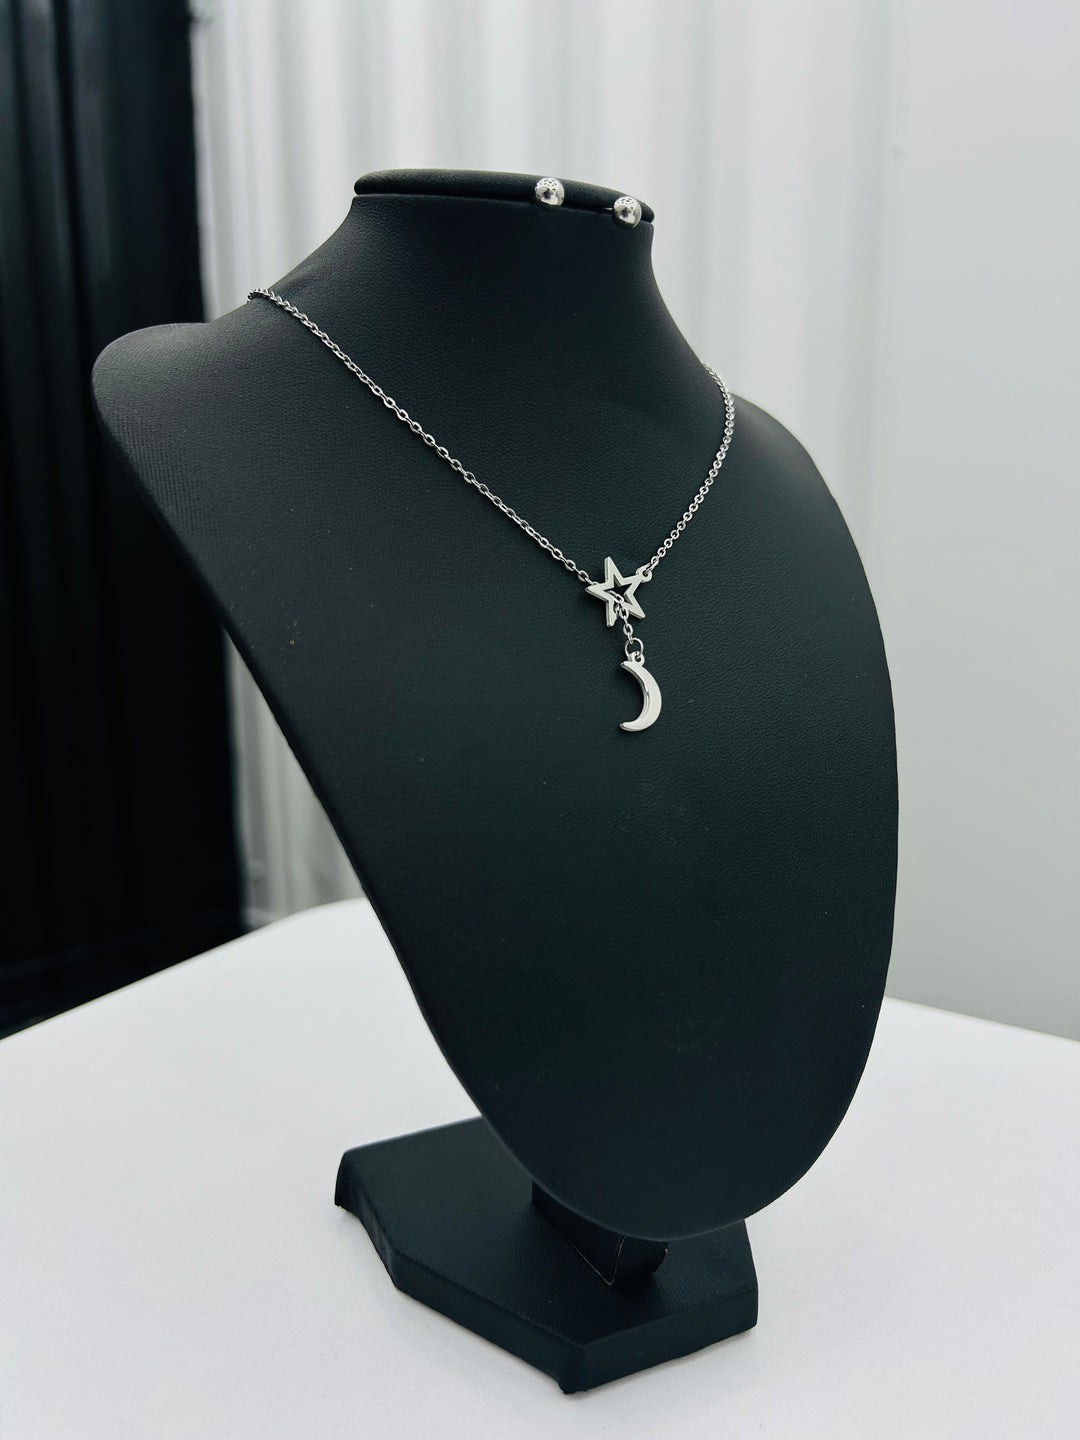 Adjustable Silver Necklace